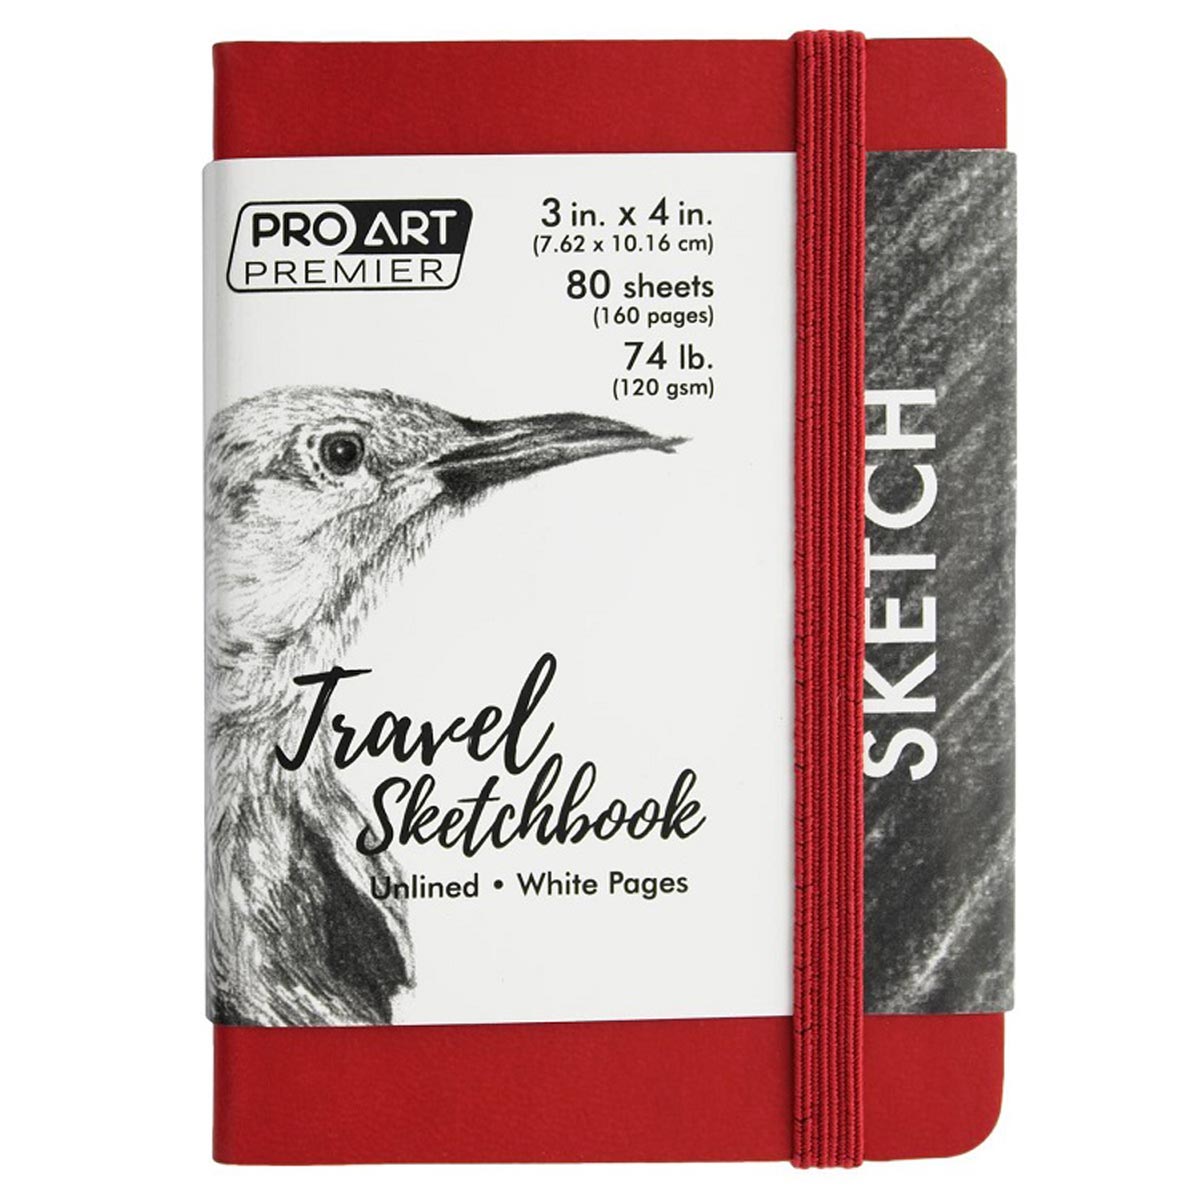 Pro Art Premier Travel Sketchbook 3" x 4" Red